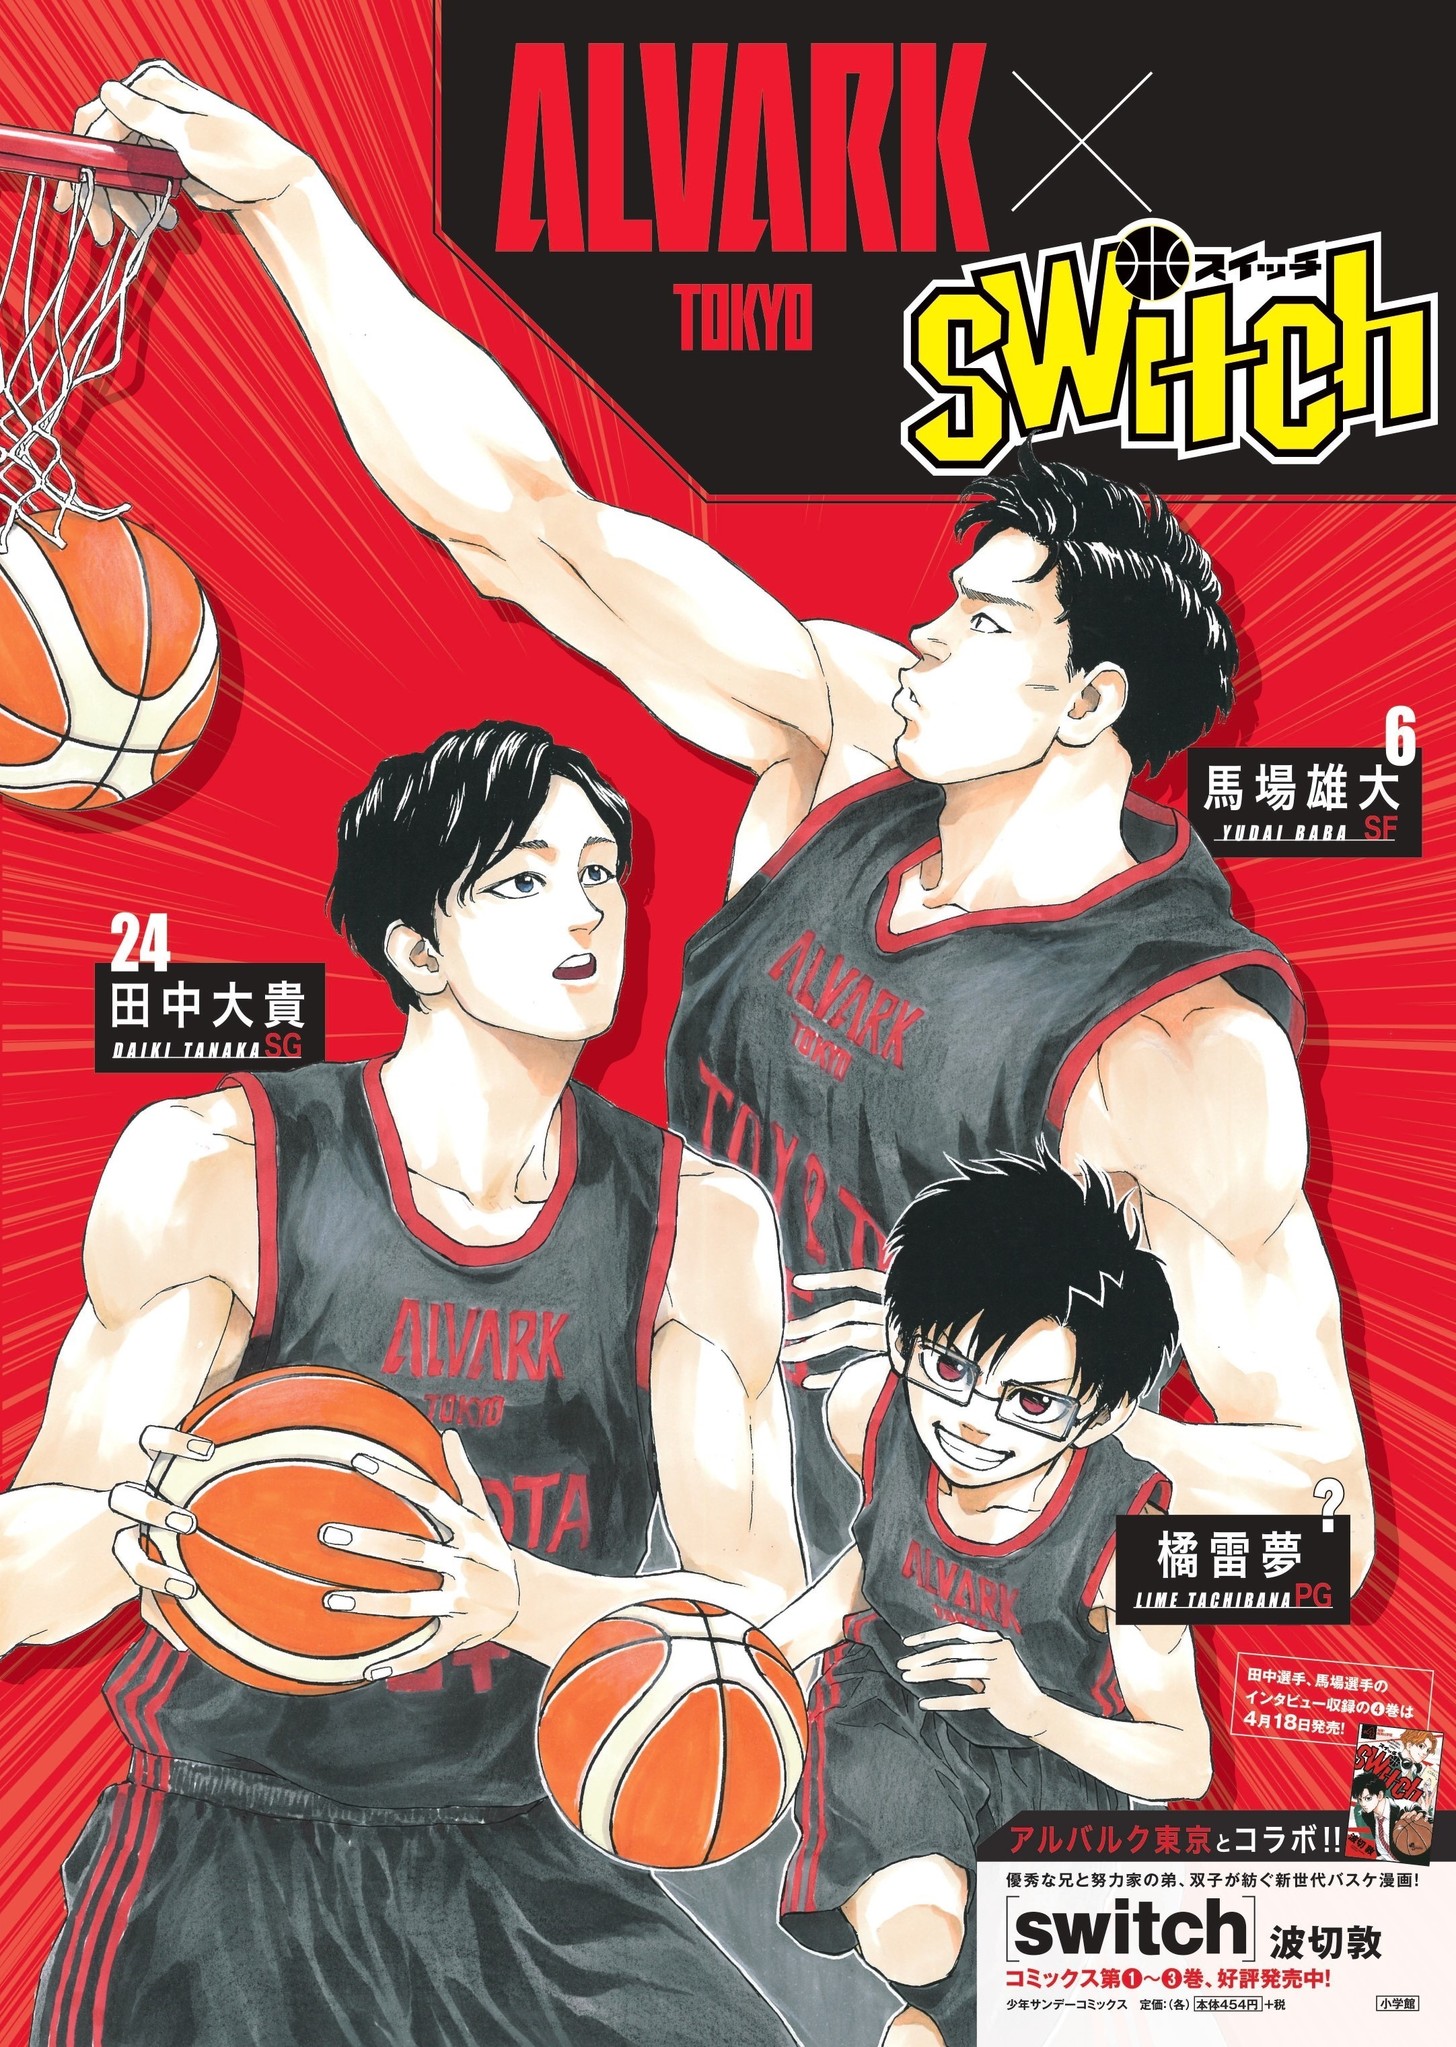 週刊少年サンデー連載中のバスケ漫画 Switch とのコラボ企画実施のお知らせ アルバルク東京のプレスリリース